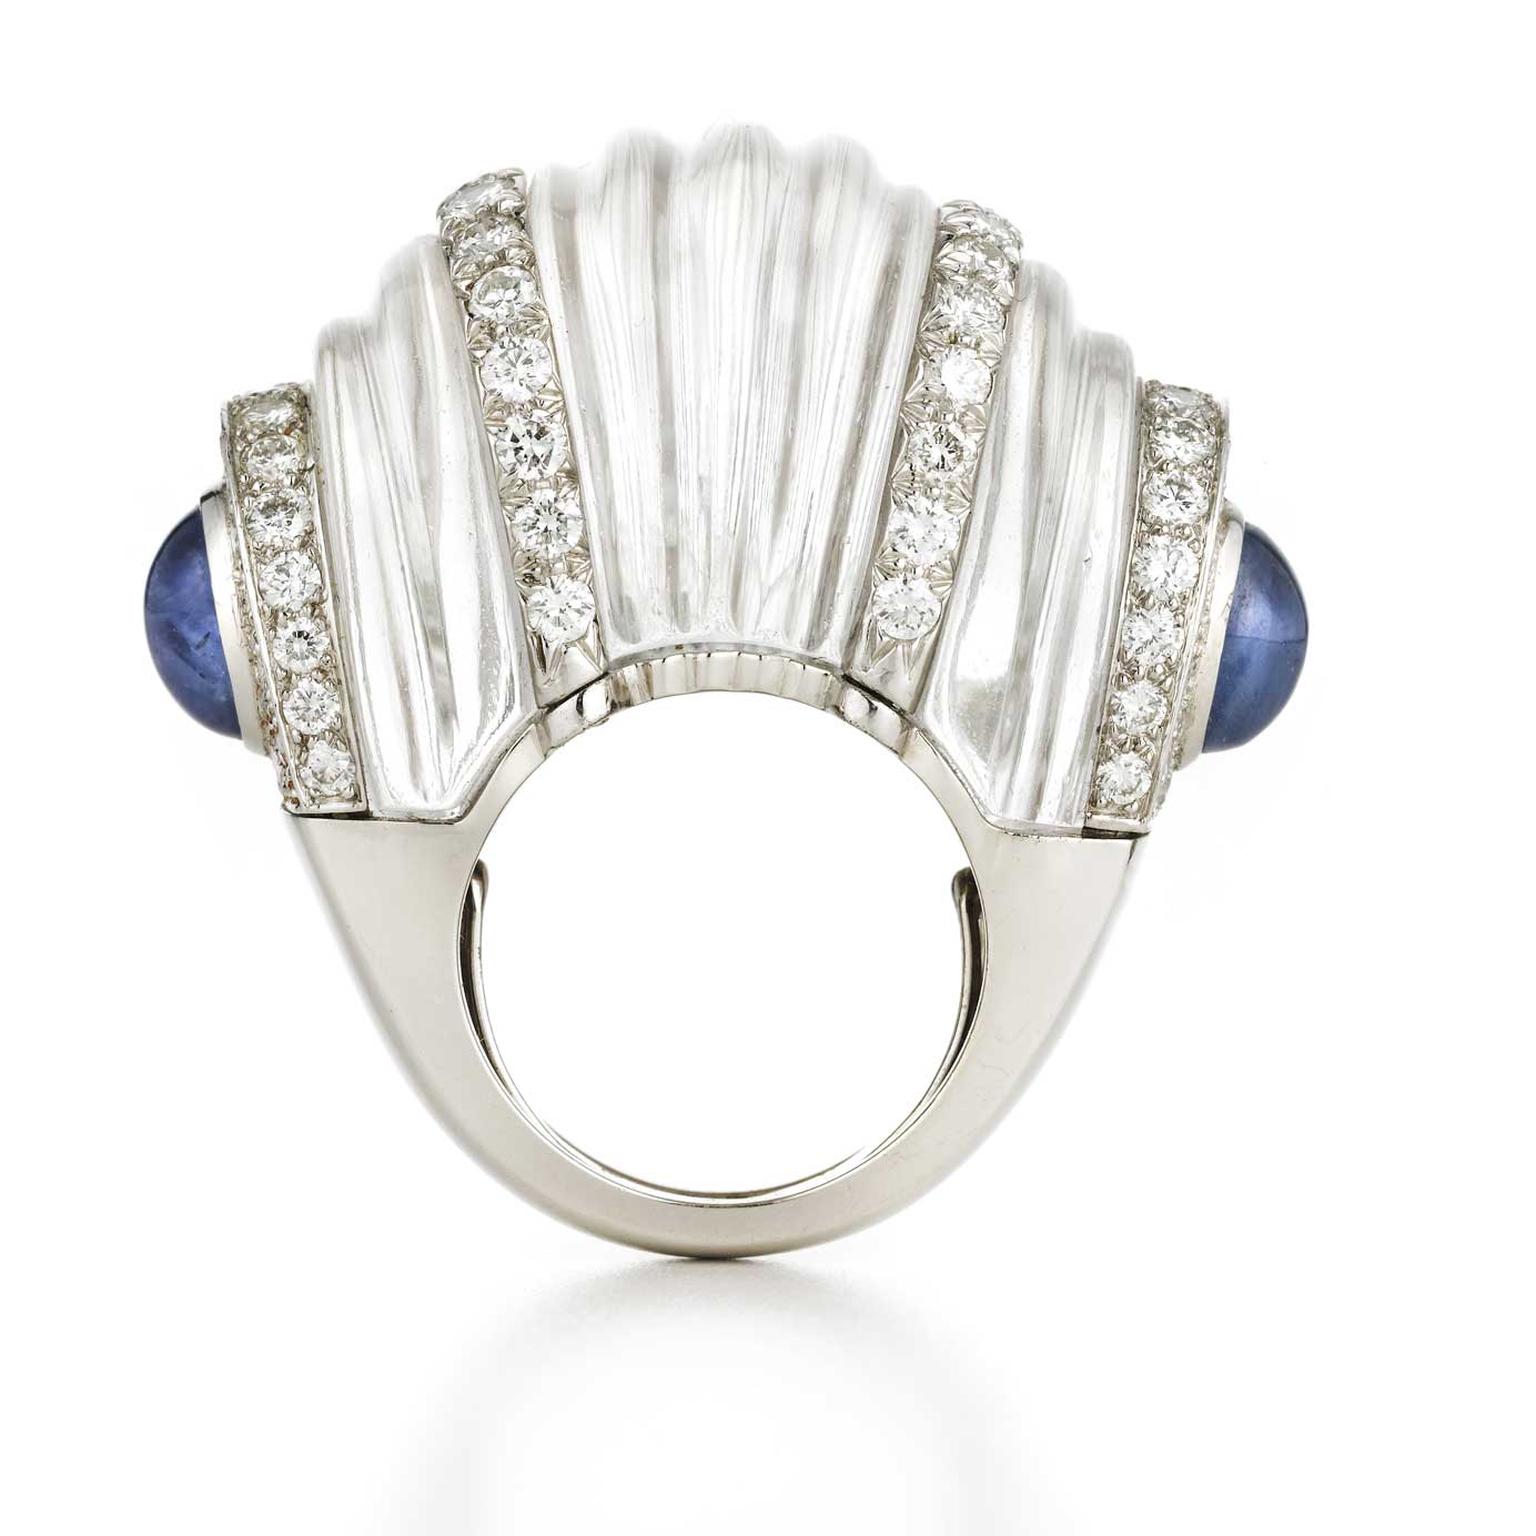 David Webb Rock crystal ring worn by Renee Zellweger Oscars 2020